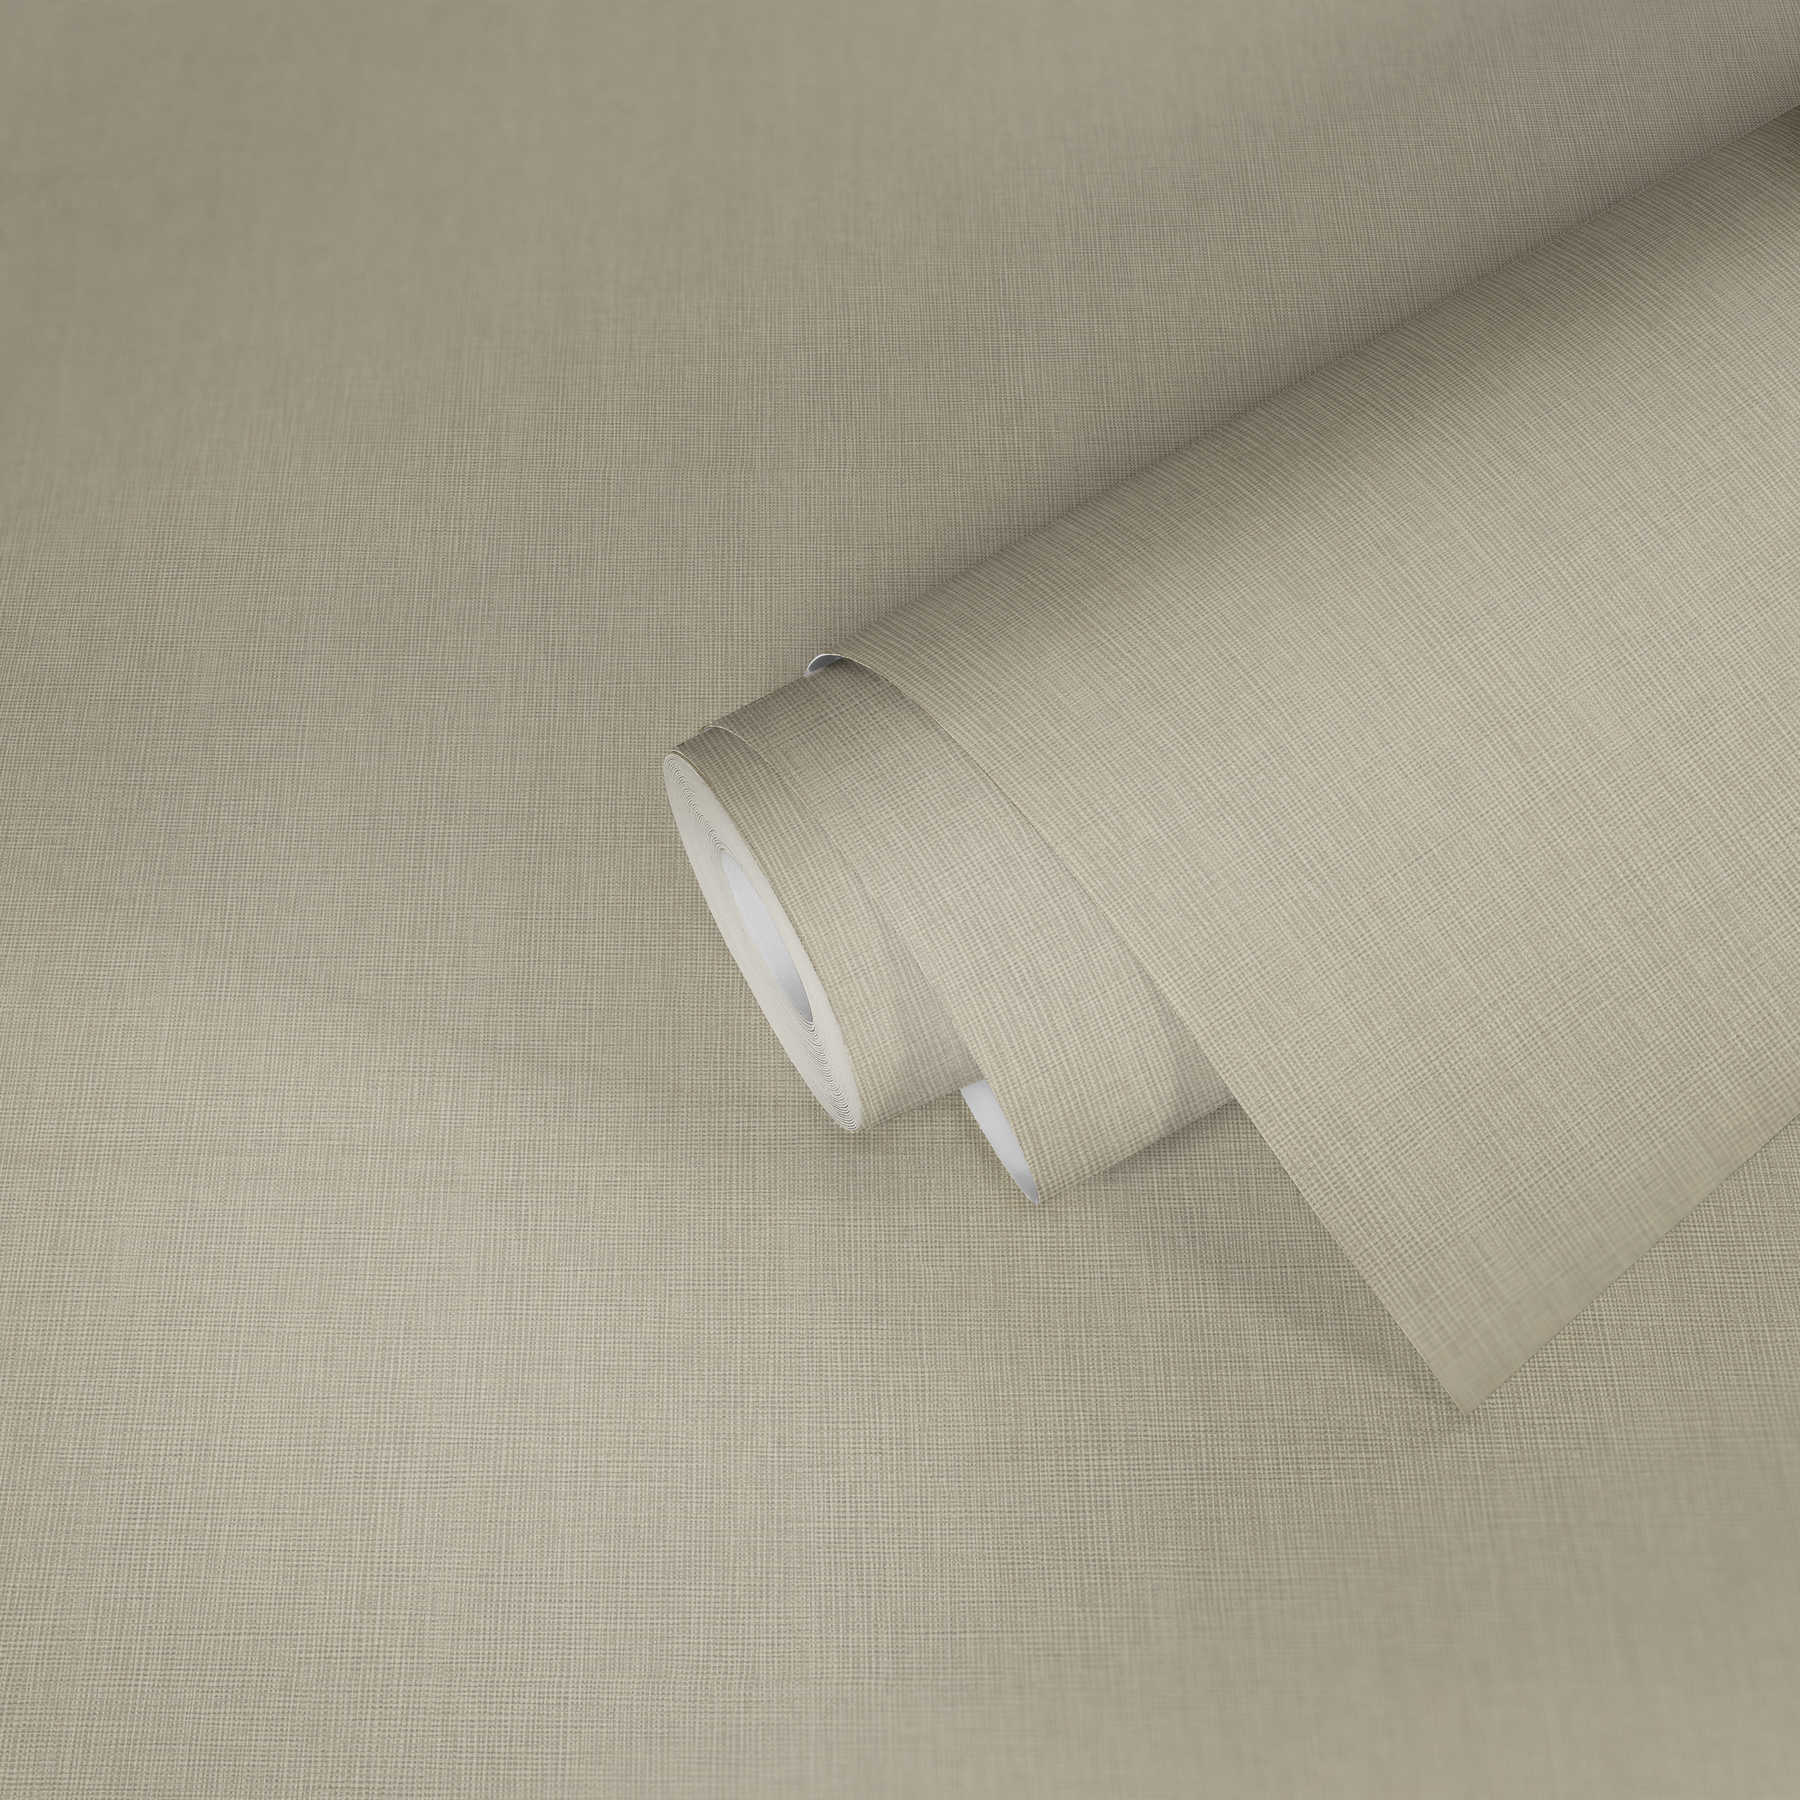             Papier peint intissé uni beige avec motif textile tissé
        